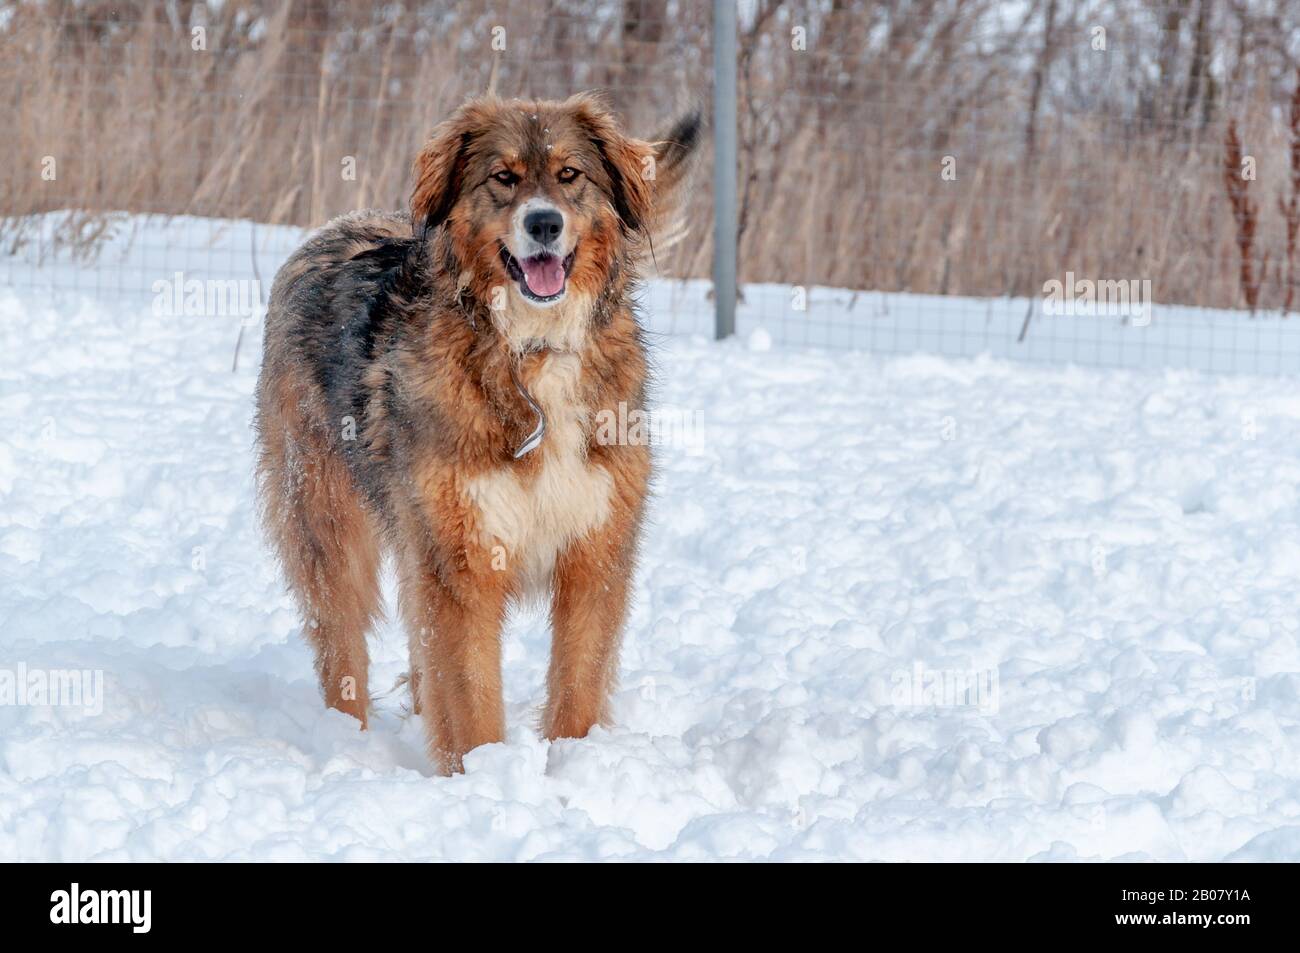 Ein schöner rothaariger Großhund steht bei einem Spaziergang auf einer schneebedeckten Fläche Stockfoto